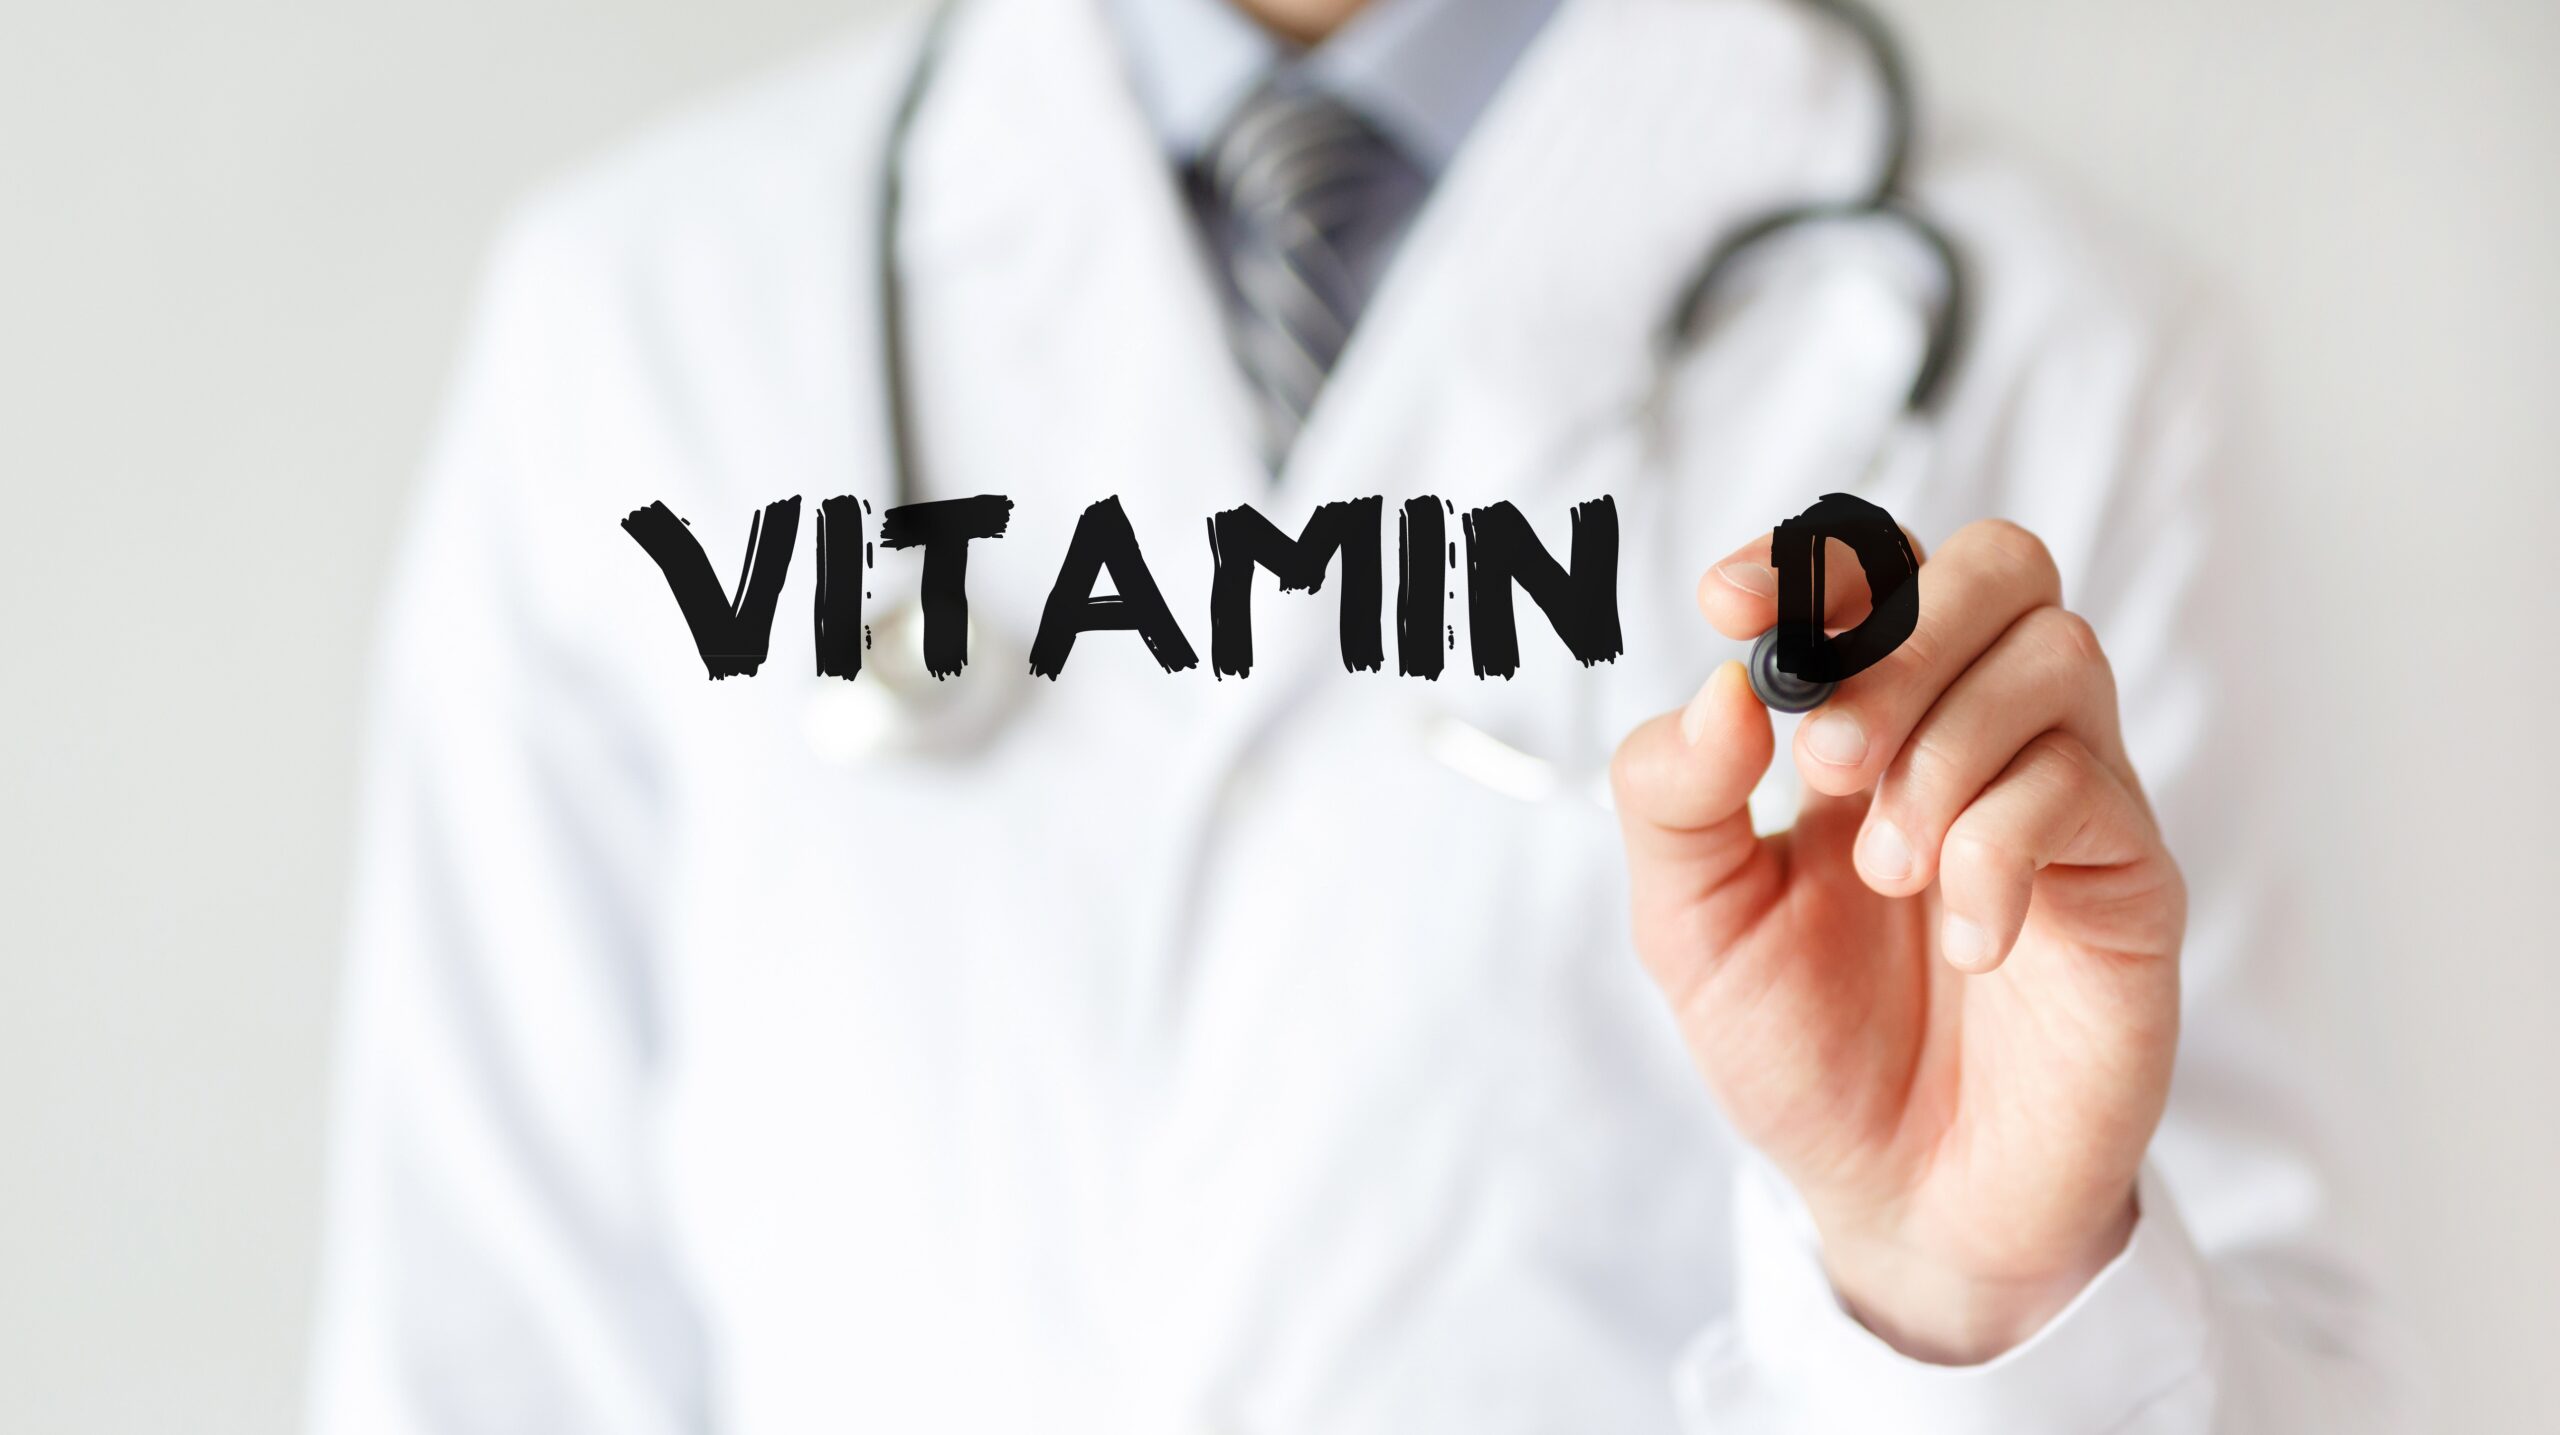 Vitamin-D-Pr-parate-scheinen-Risiko-f-r-Diabetes-zu-senken